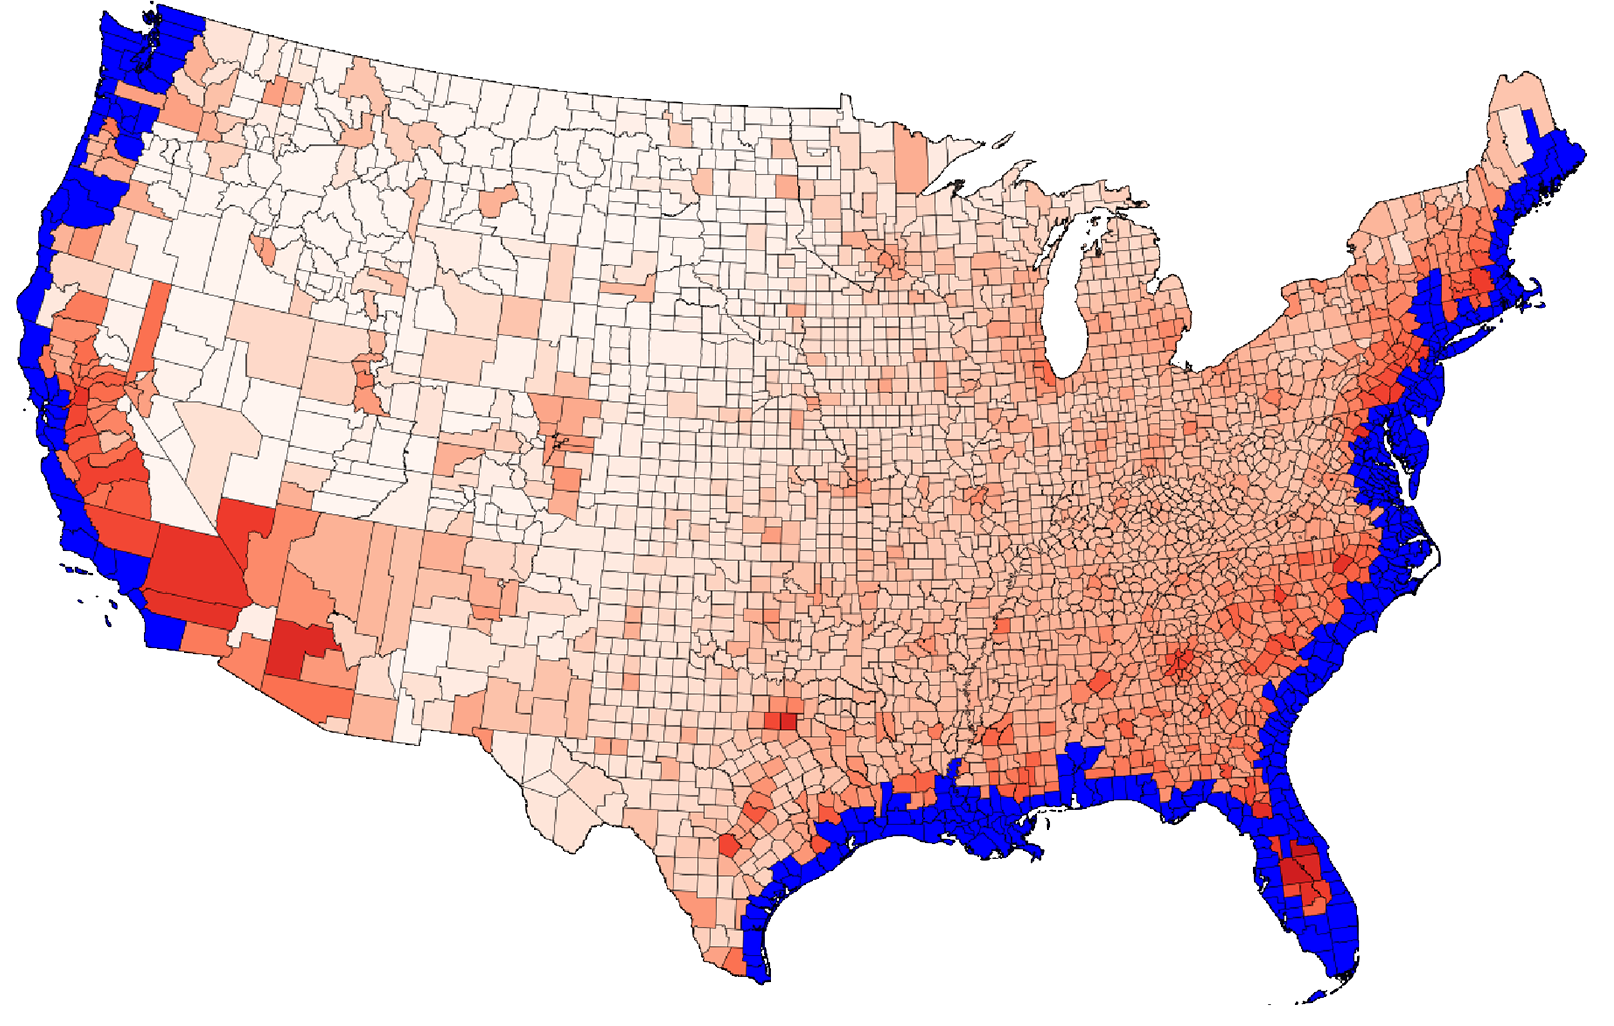 Округа США, на которые повлияет повышение уровня моря на шесть футов, выделены синим цветом. Внутренние округа заштрихованы красным цветом в зависимости от того, сколько мигрантов они примут из прибрежных районов. 